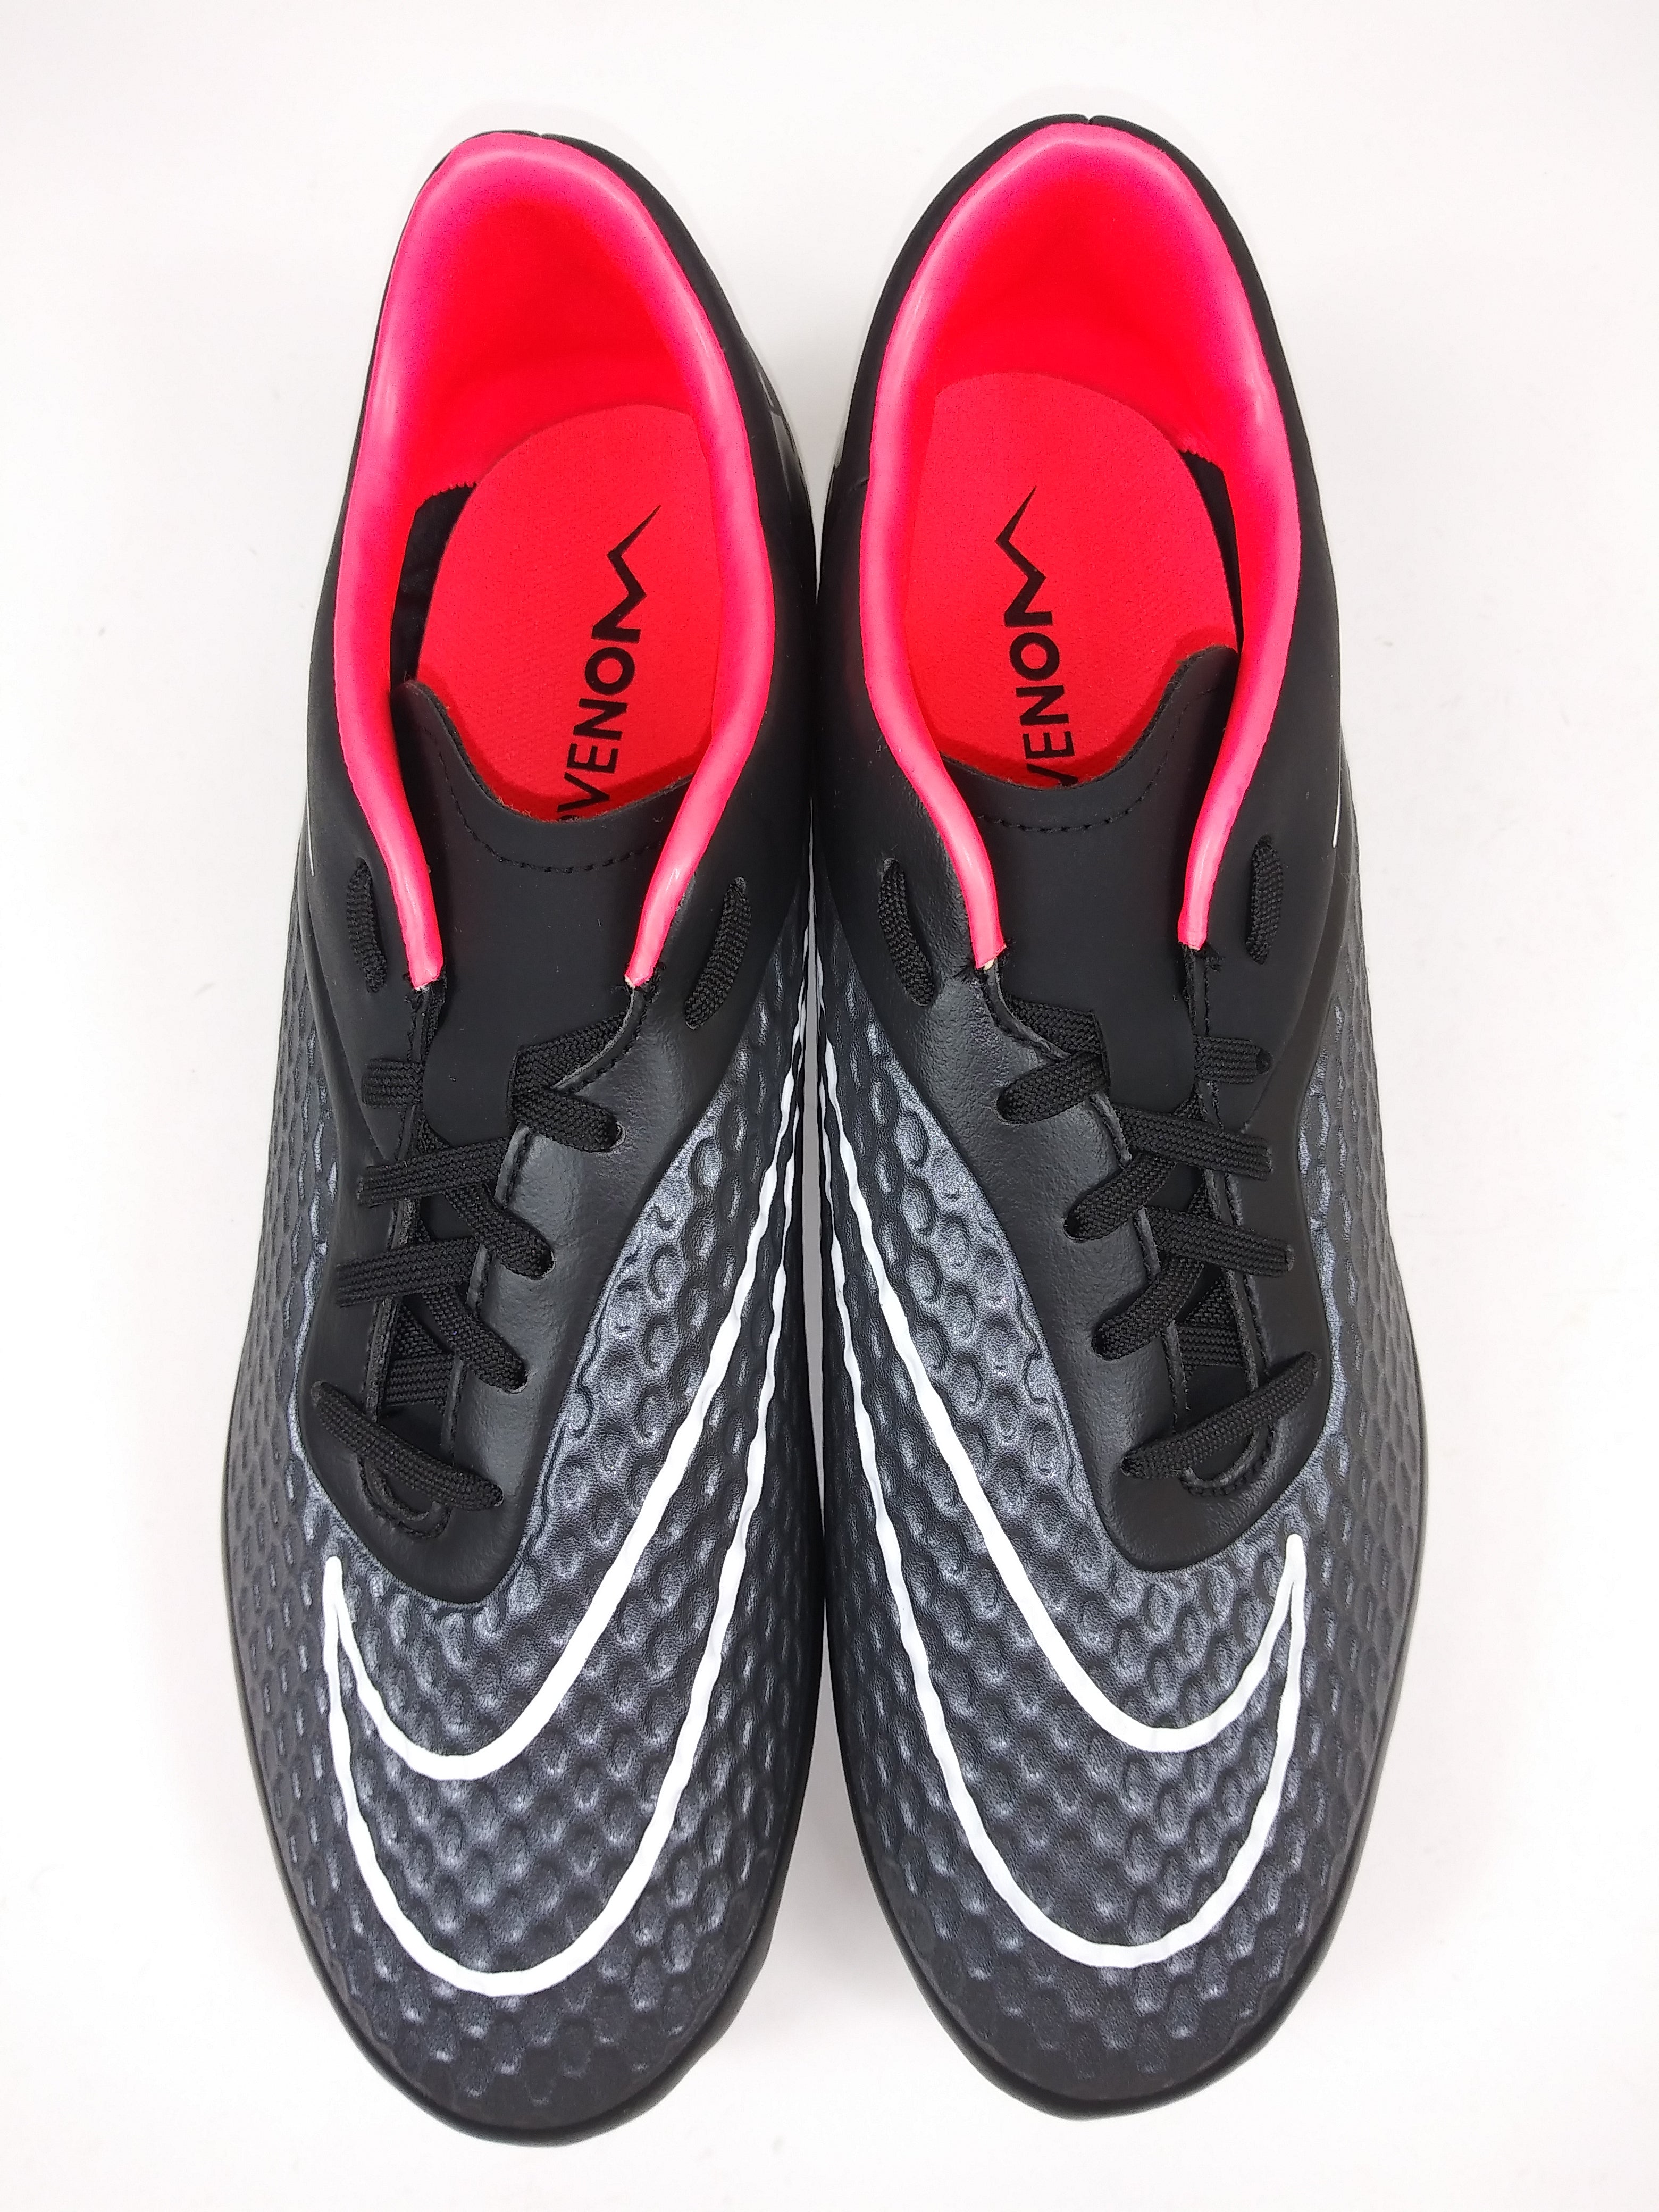 Nike Hypervenom Phelon FG Black Pink 